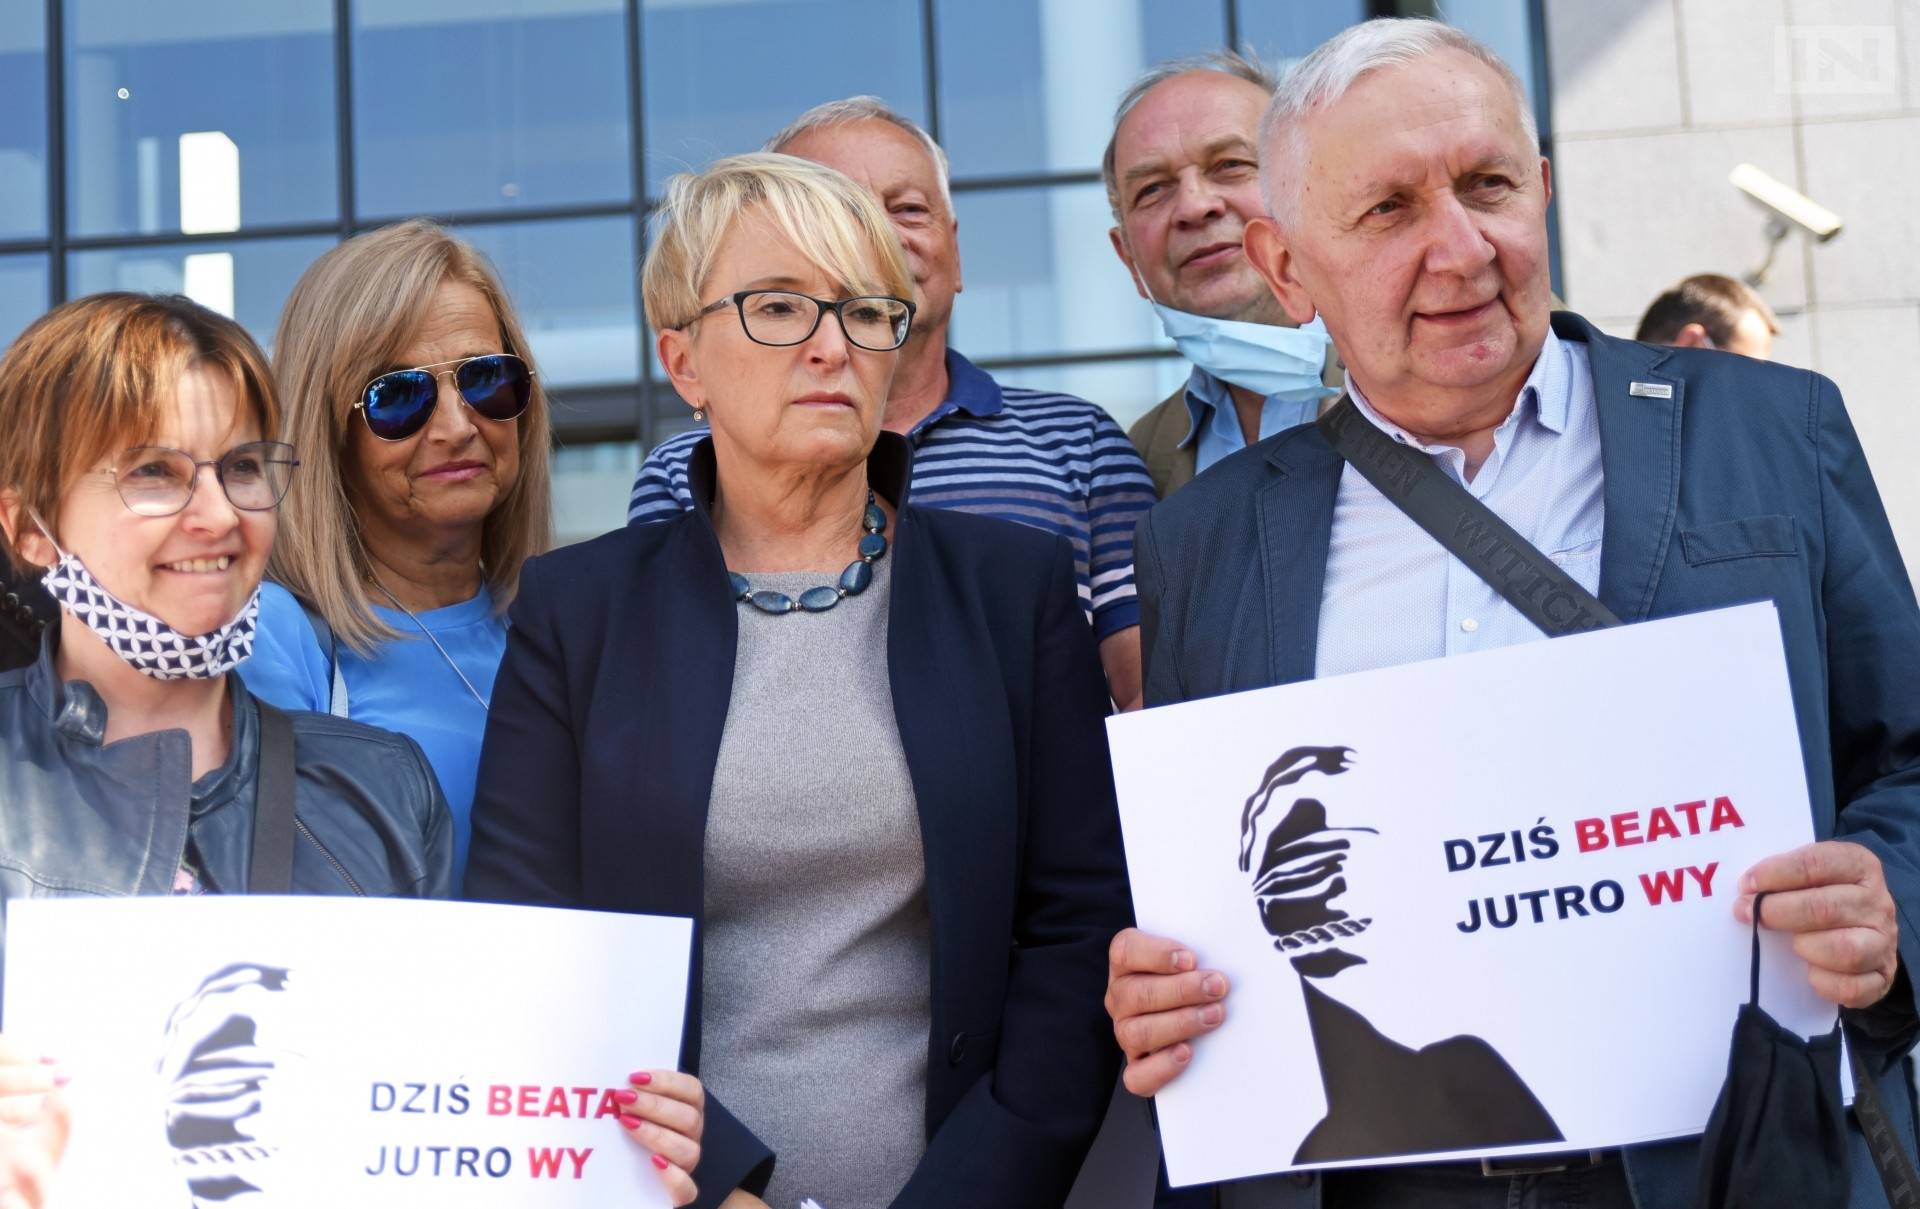 Sędzia Morawiec: spodziewam się co zrobi teraz prokuratura Ziobry